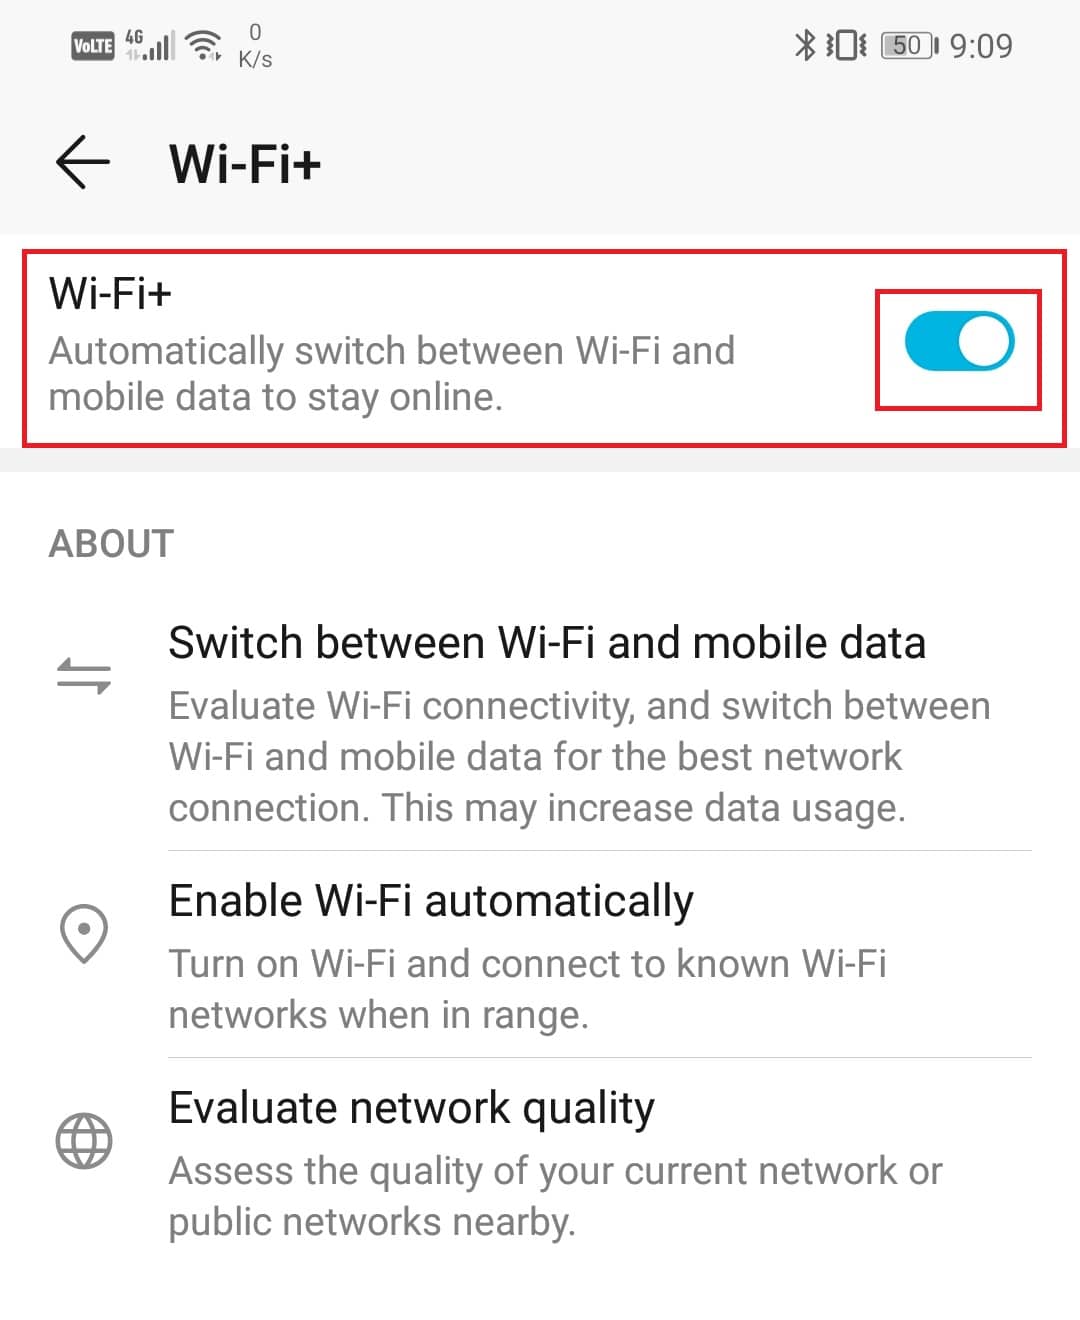 включите тумблер рядом с опцией Wi-Fi+. | усилить сигнал Wi-Fi на Android